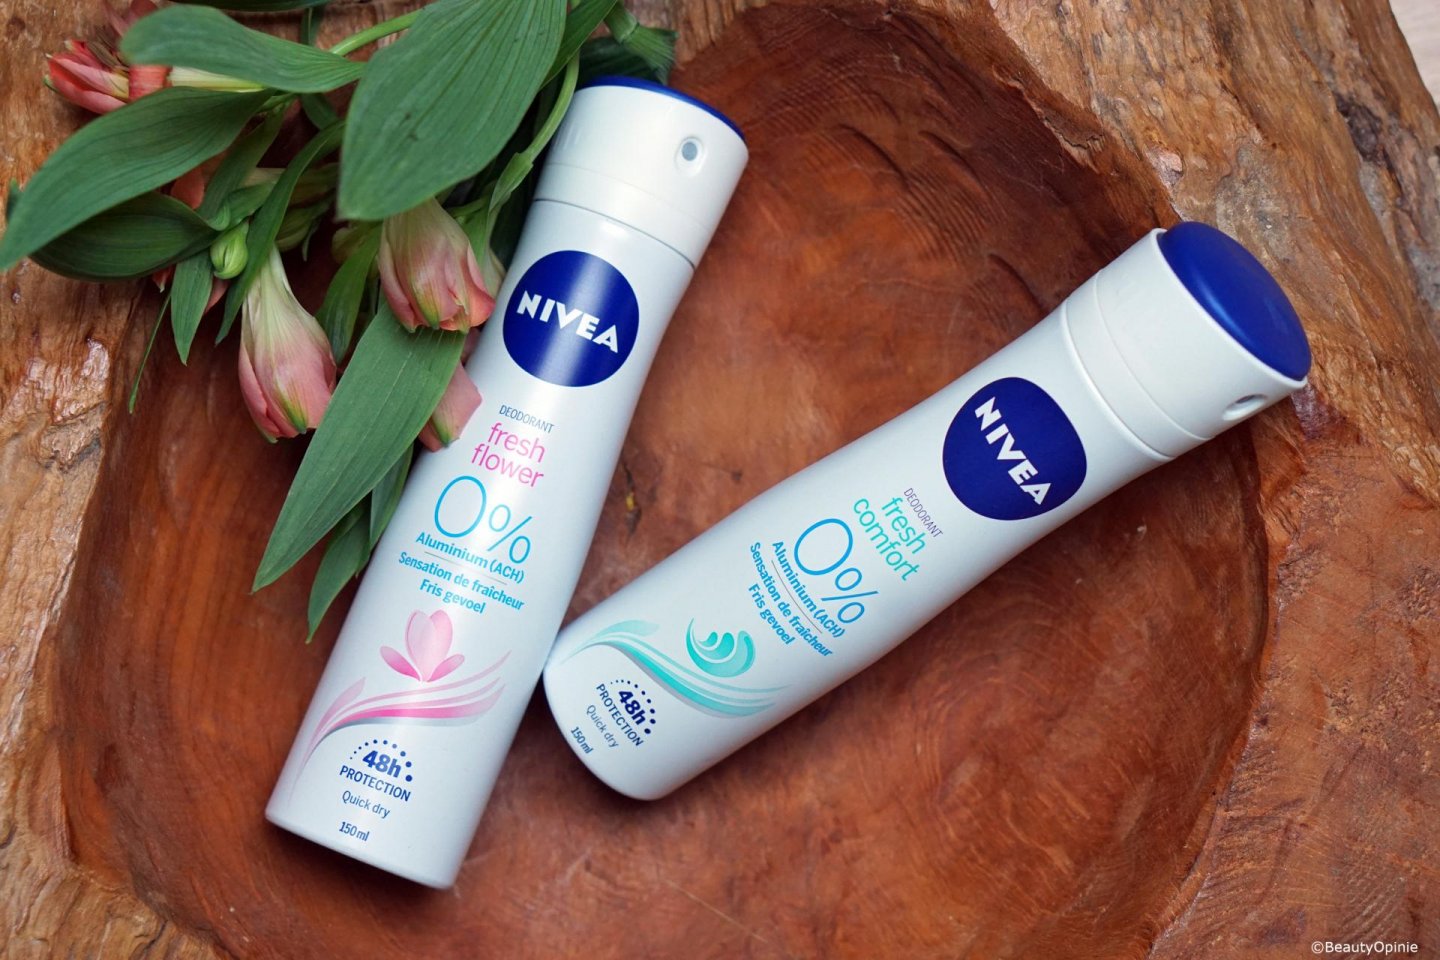 0% aluminiumzout deodorant van Nivea review